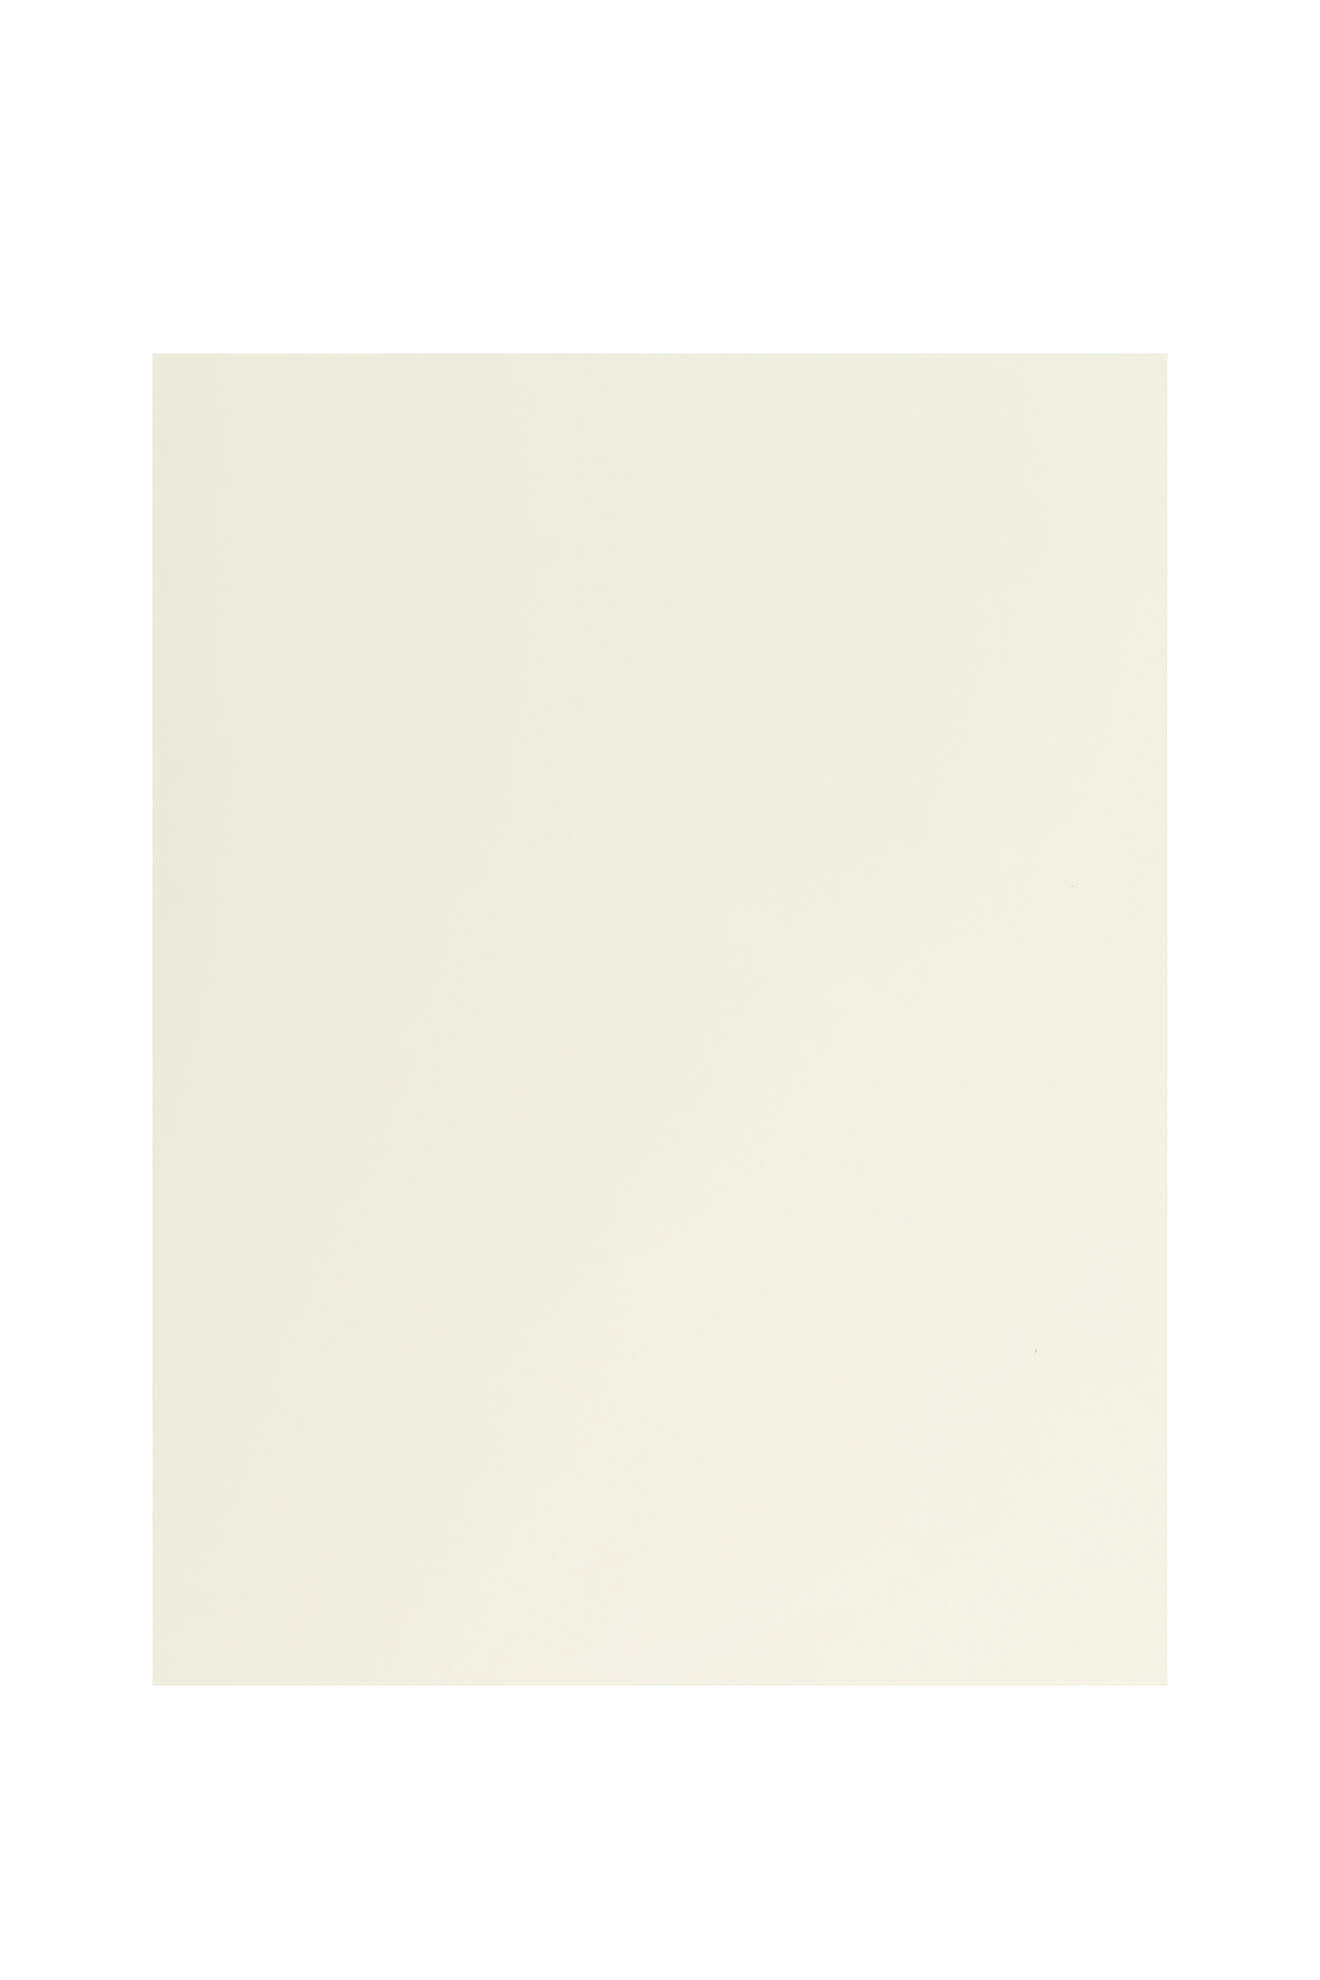 Pickguard Blank - 315 x 240 mm (12.4 x 9.45") - Parchment